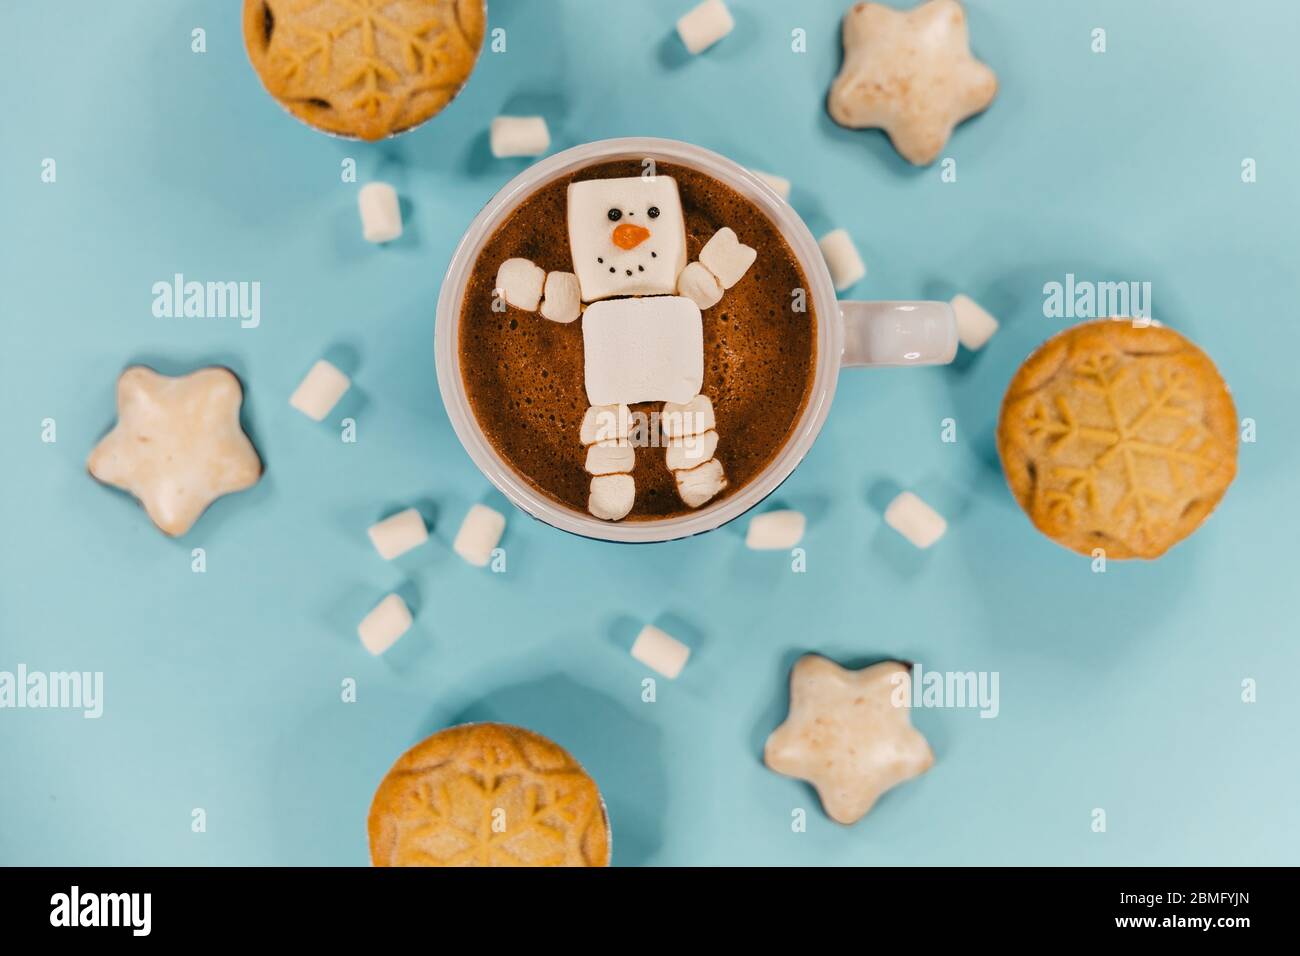 Ein Marshmallow-Schneemann in heißer Schokolade, umgeben von Keksen und Hackkuchen Stockfoto